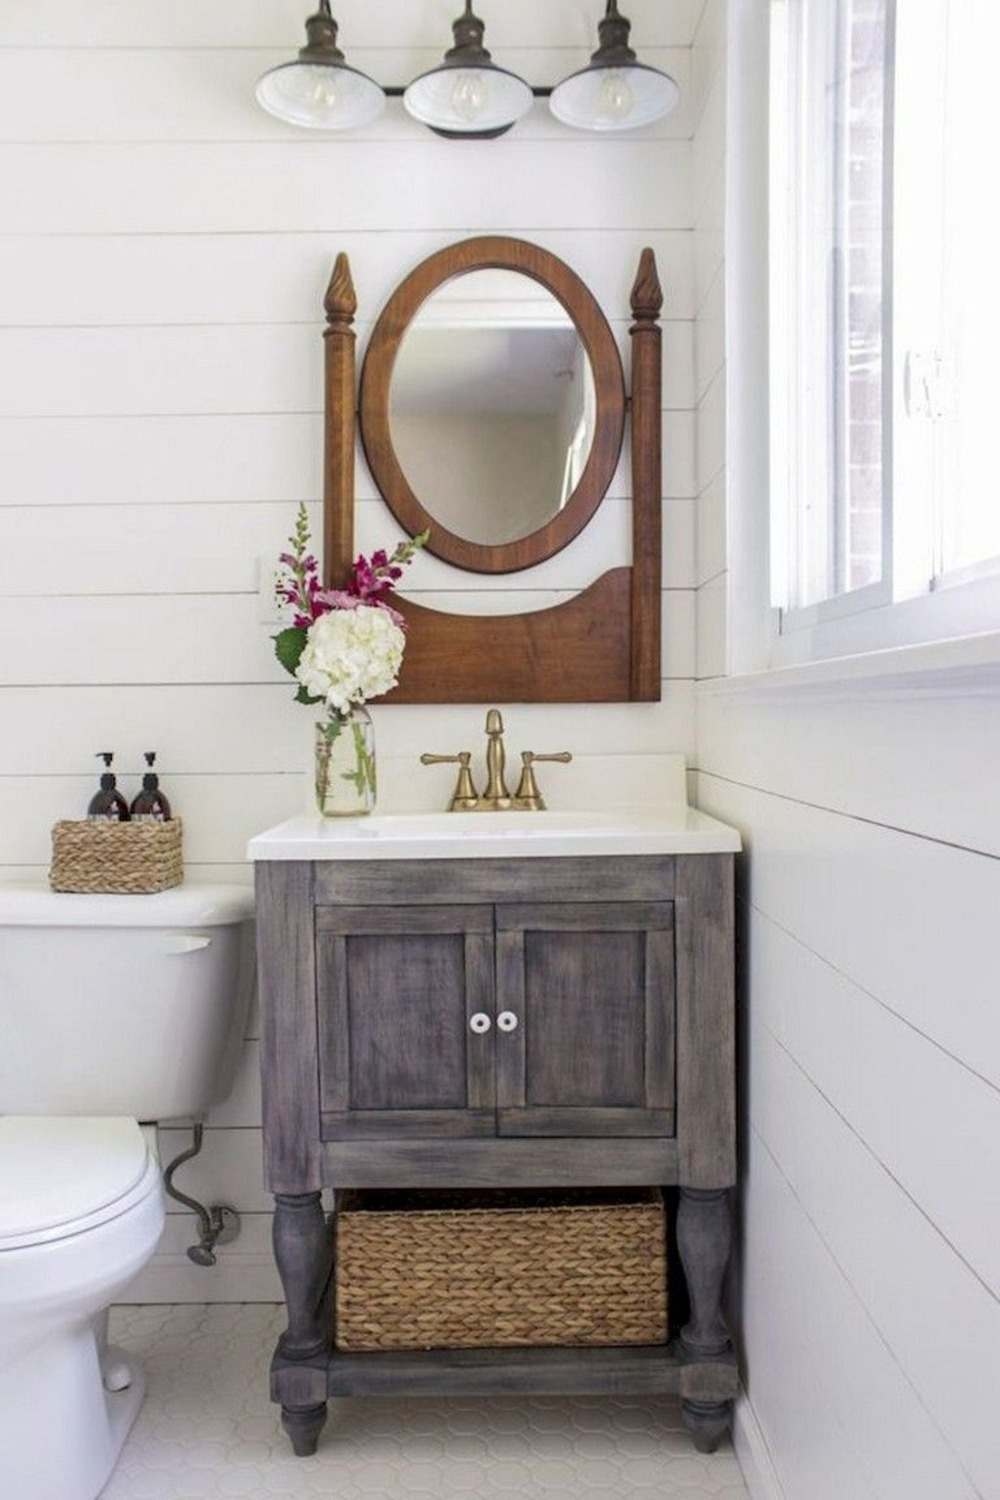 kleiner waschtisch holz rustikal vintage look mit altem spiegel und leuchtmitteln sowie korb für aufbewahrung